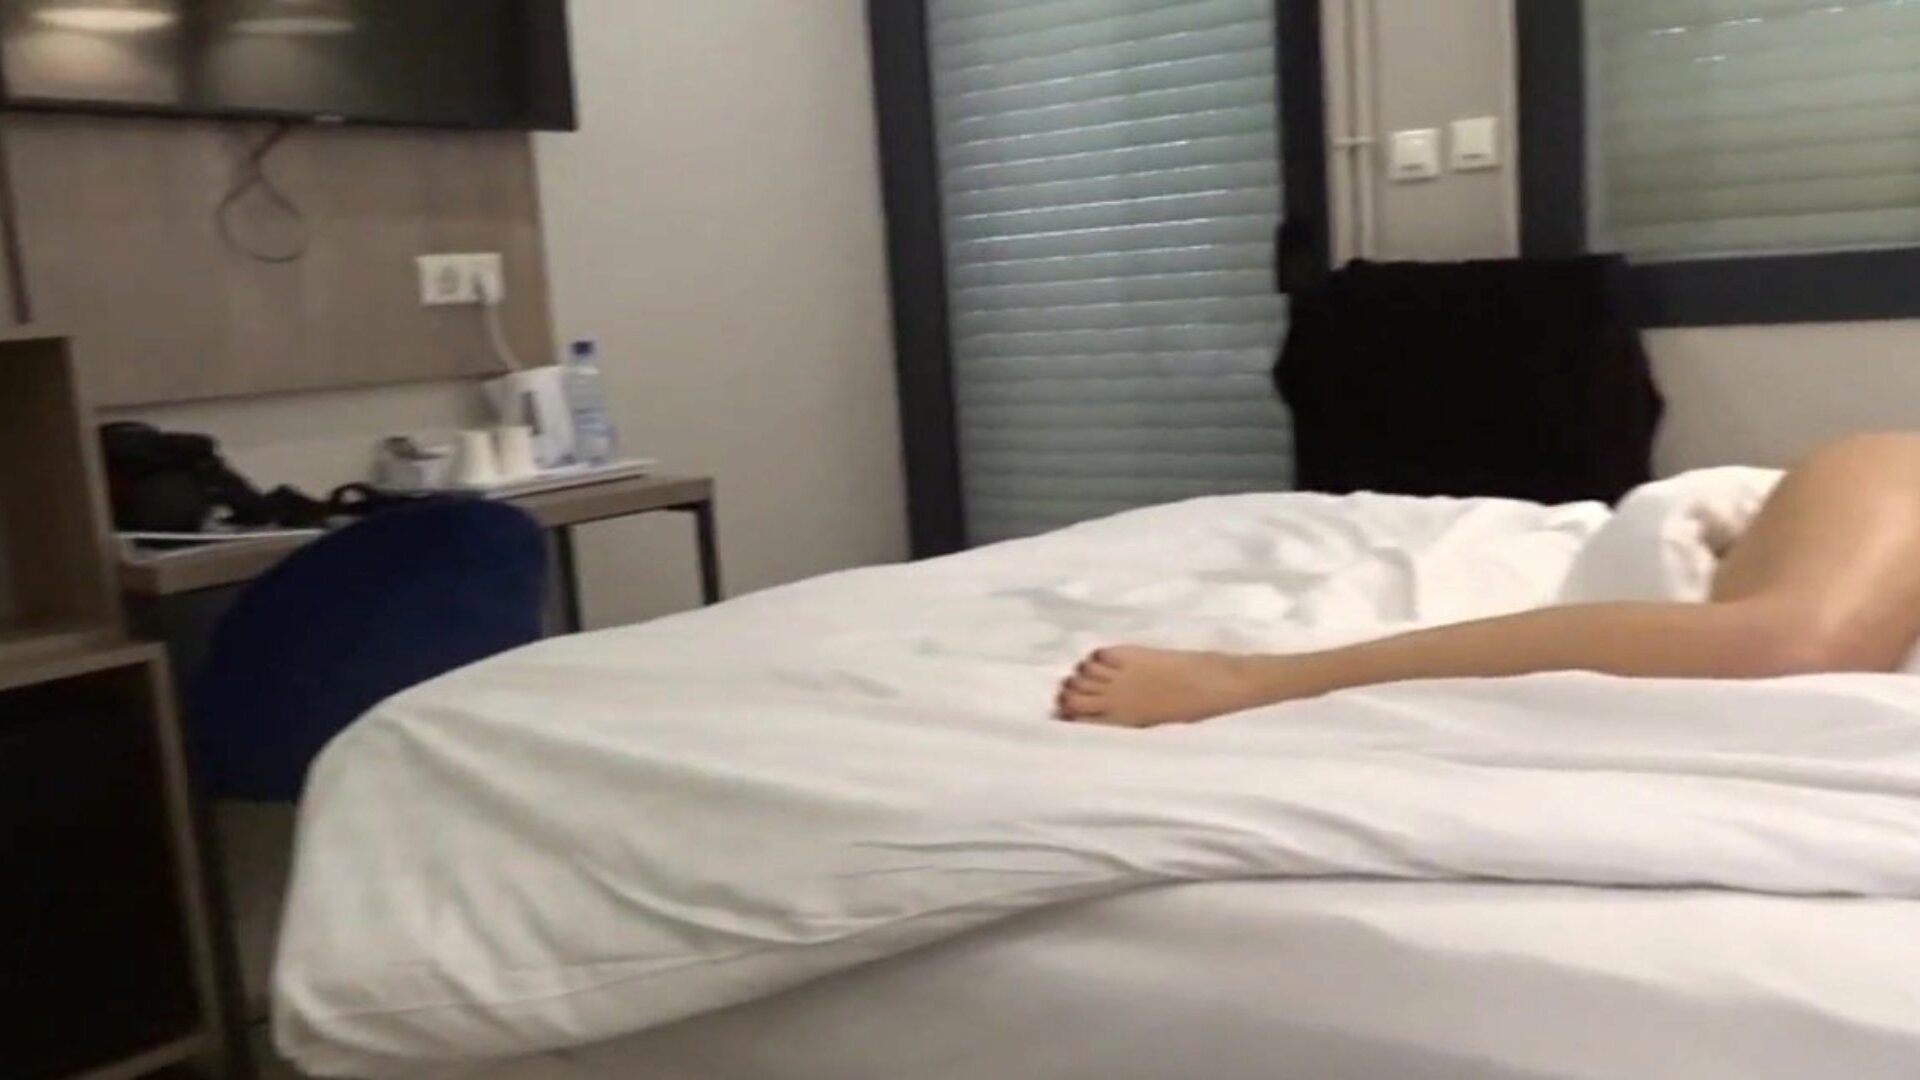 царла-ц гола на хотелском снимку где сам свучена на свом лежају у хотелској соби за госте и у купатилу